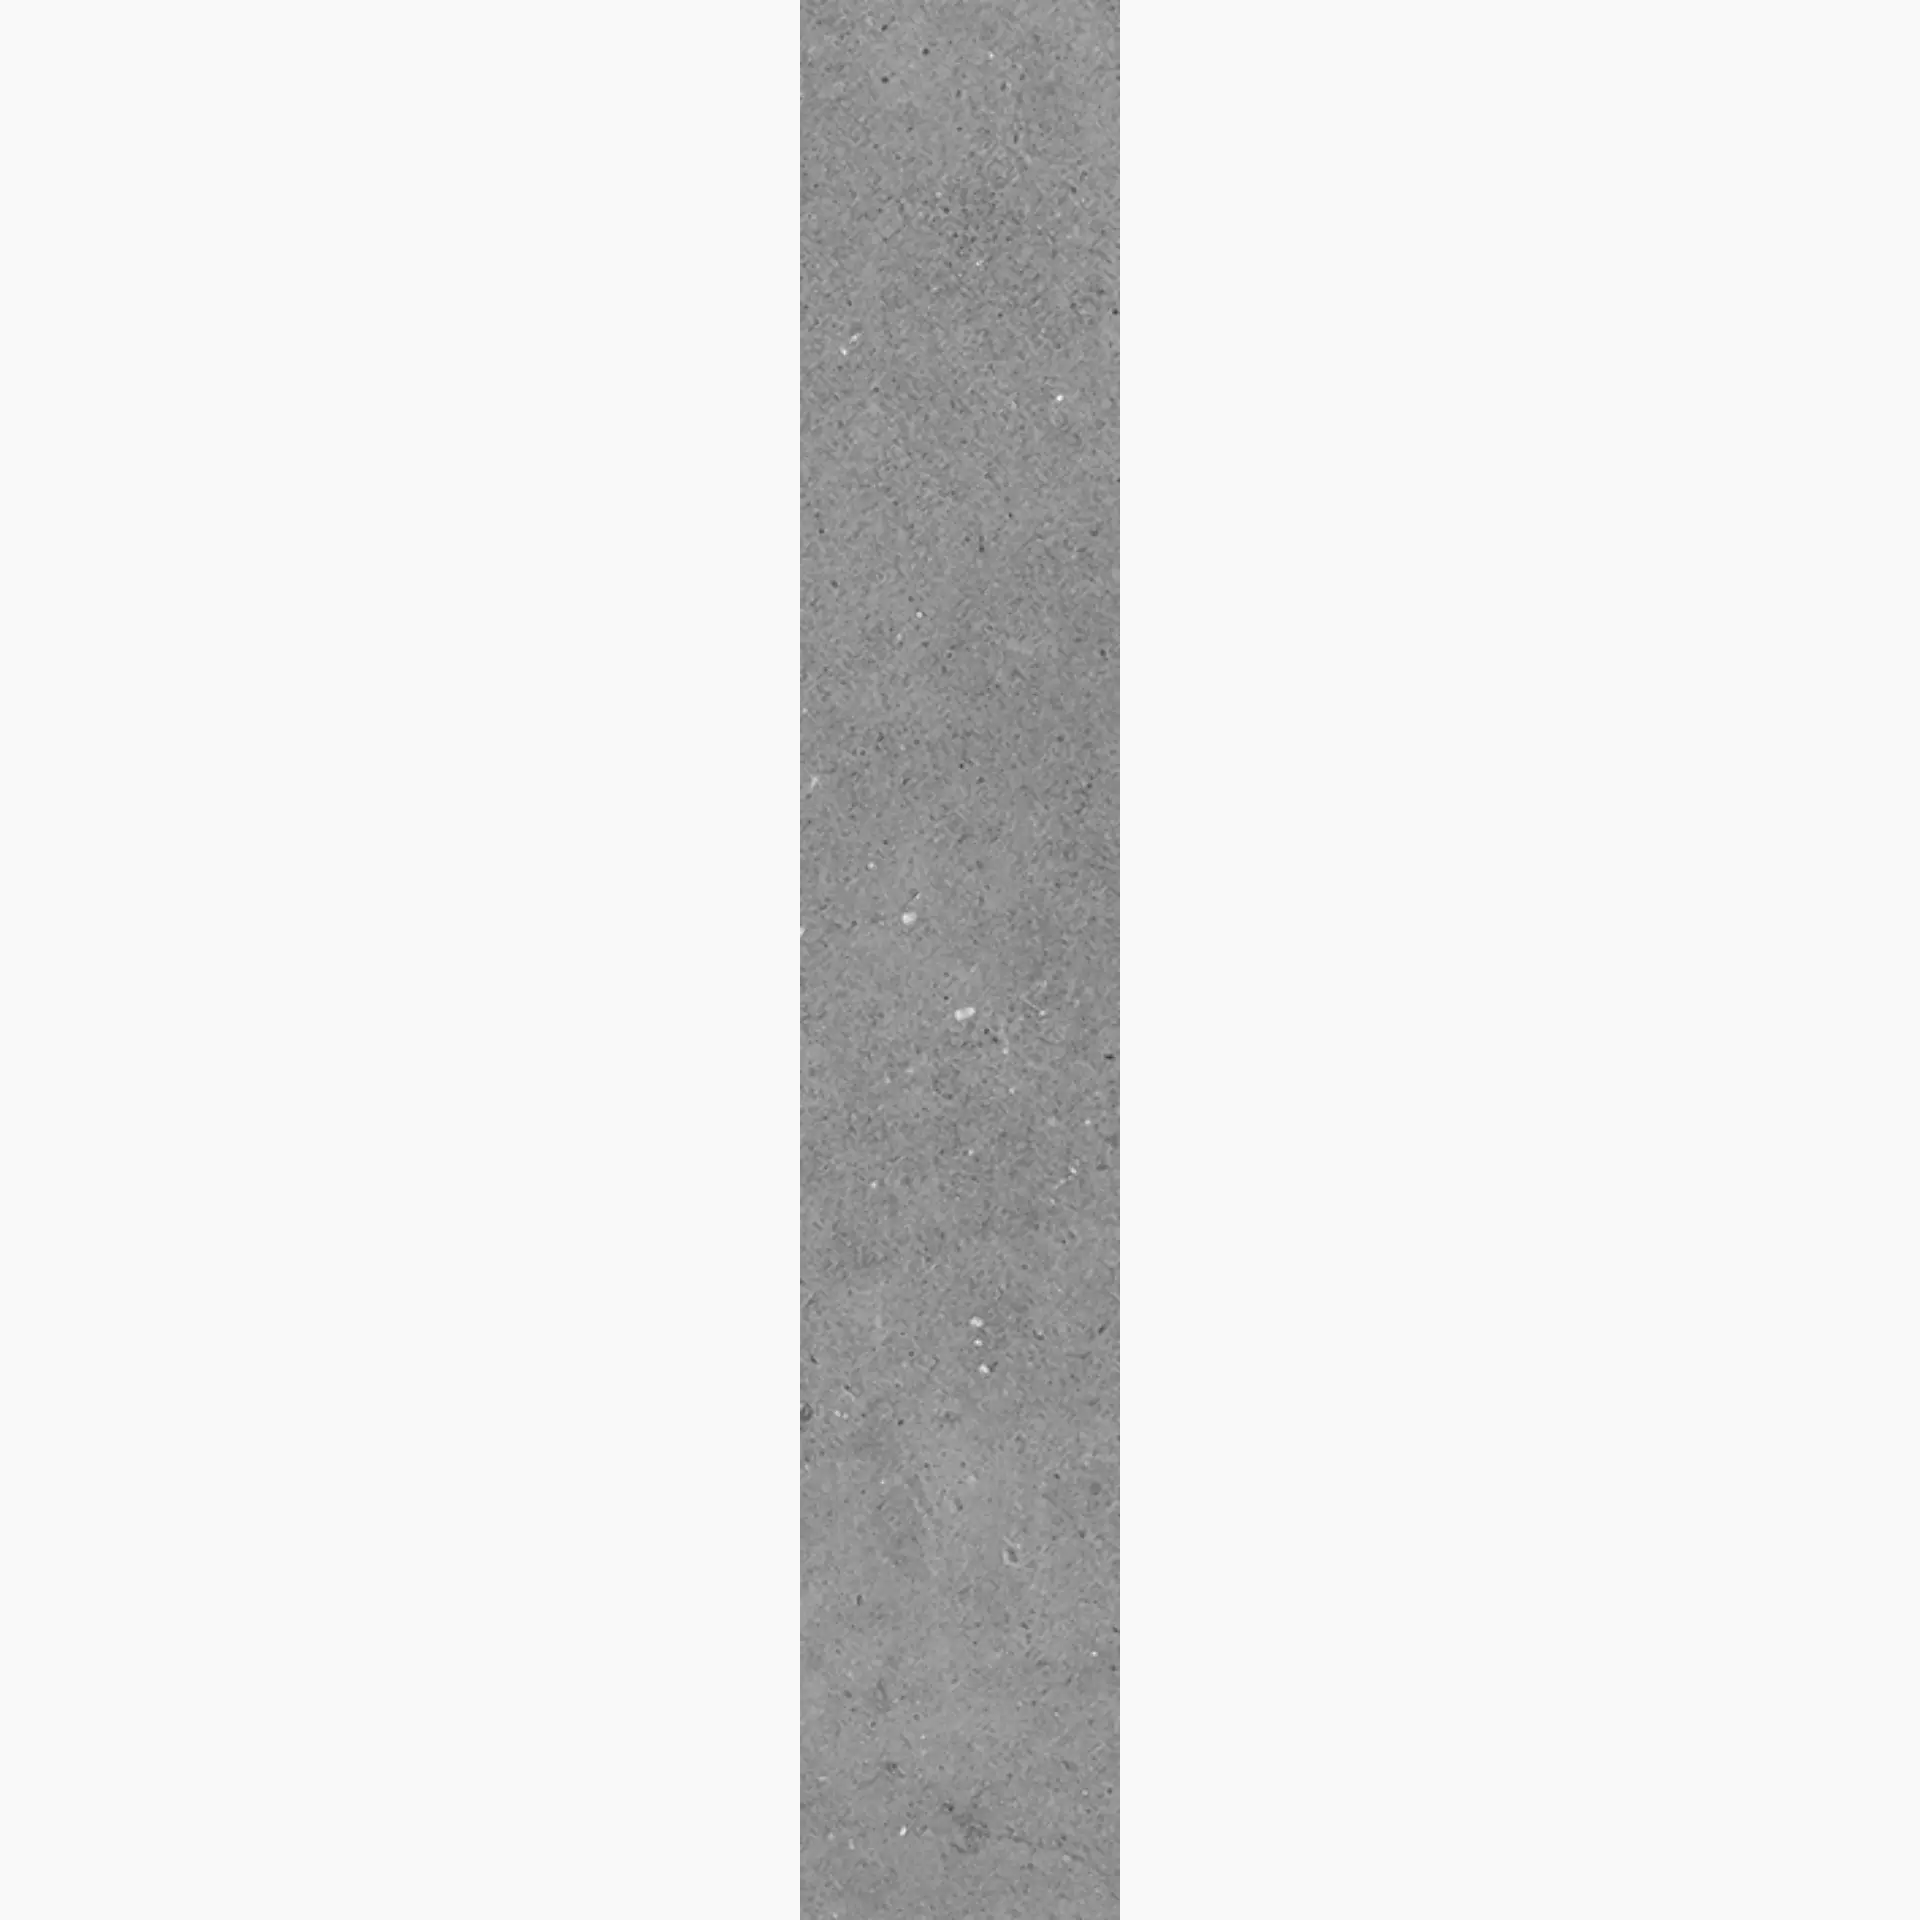 Wandfliese,Bodenfliese Villeroy & Boch Solid Tones Pure Concrete Matt Pure Concrete 2417-PC61 matt 10x60cm rektifiziert 10mm